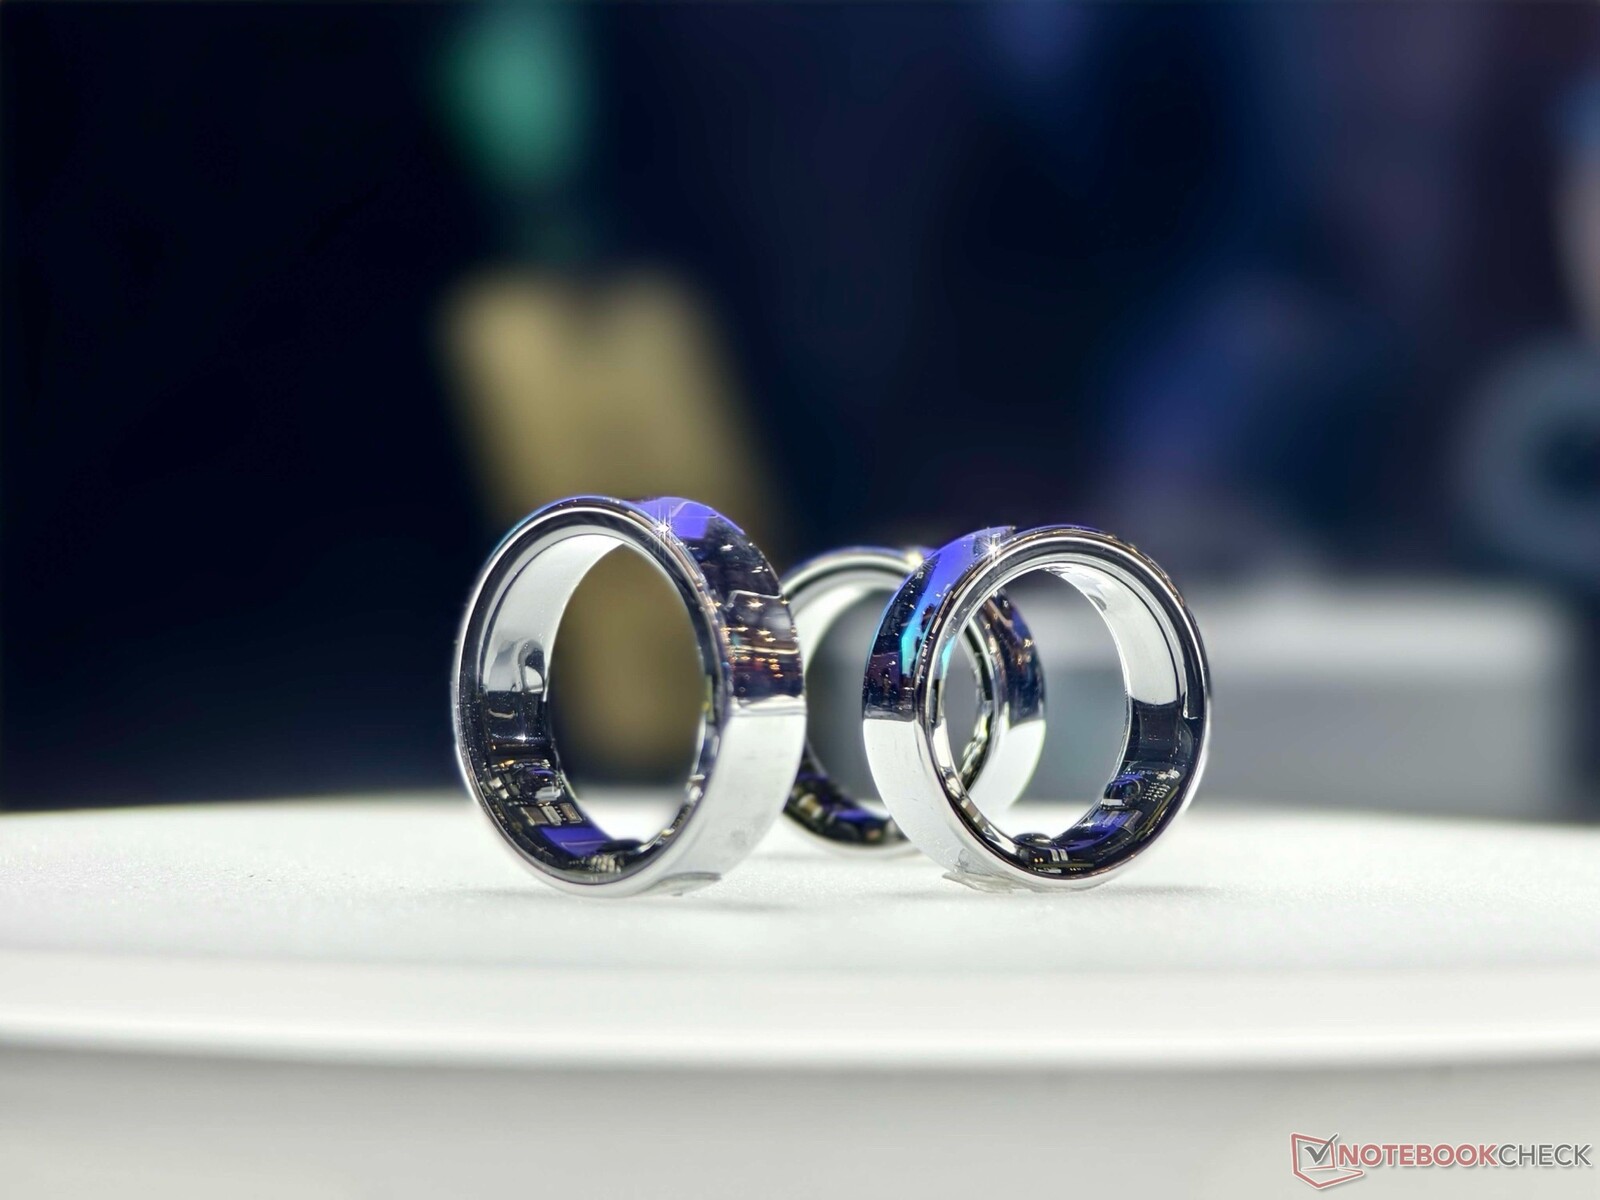 El próximo wearable de Samsung será un anillo inteligente